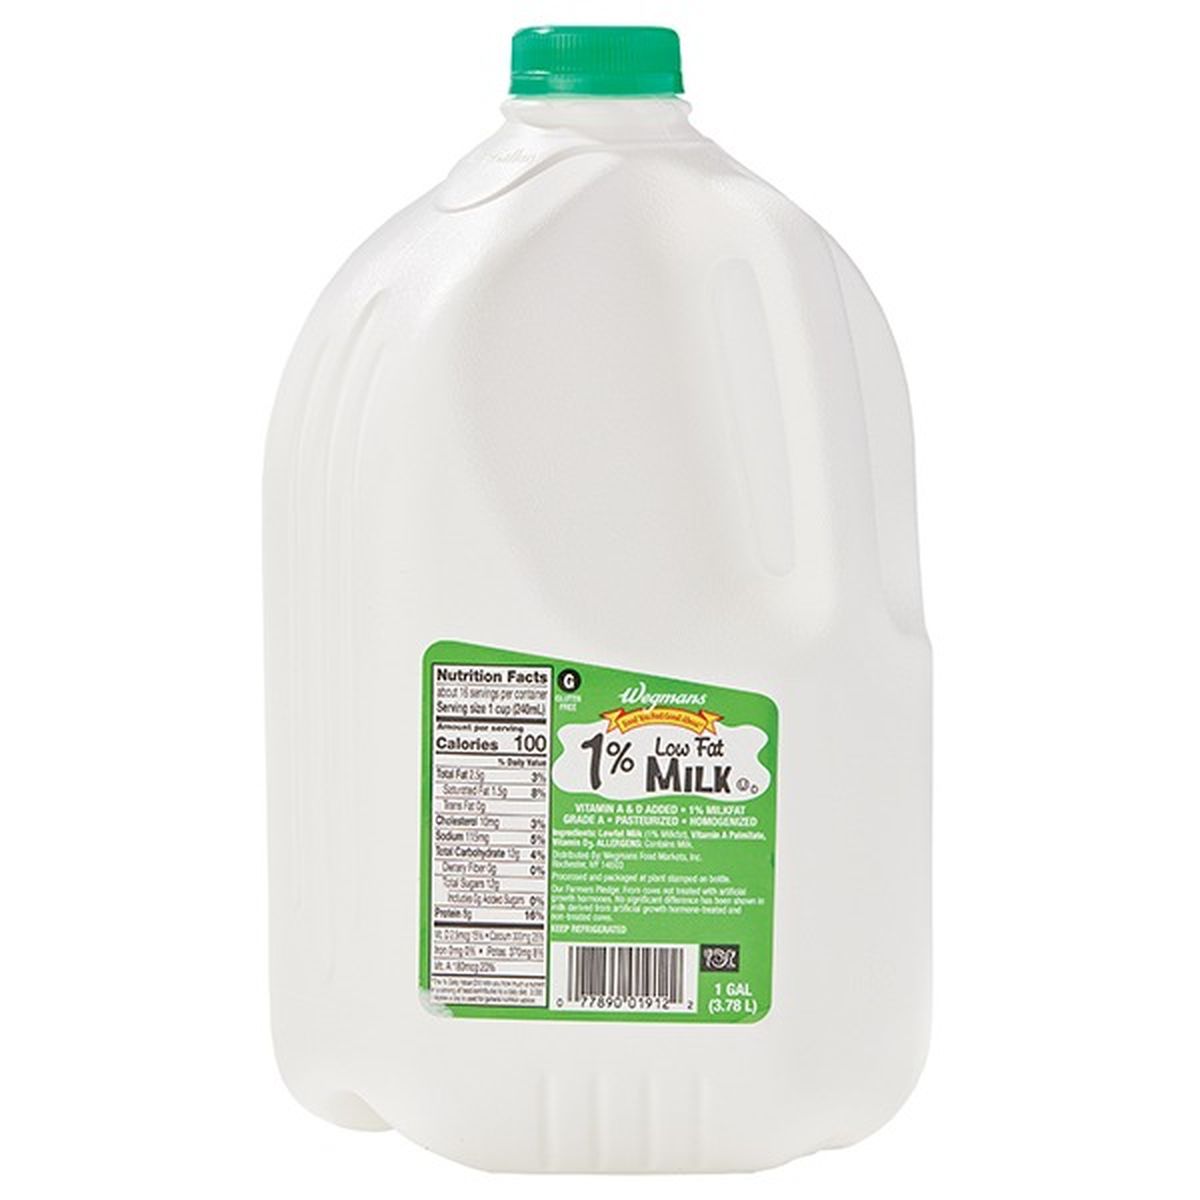 Calories in Wegmans Milk, 1%, Low Fat